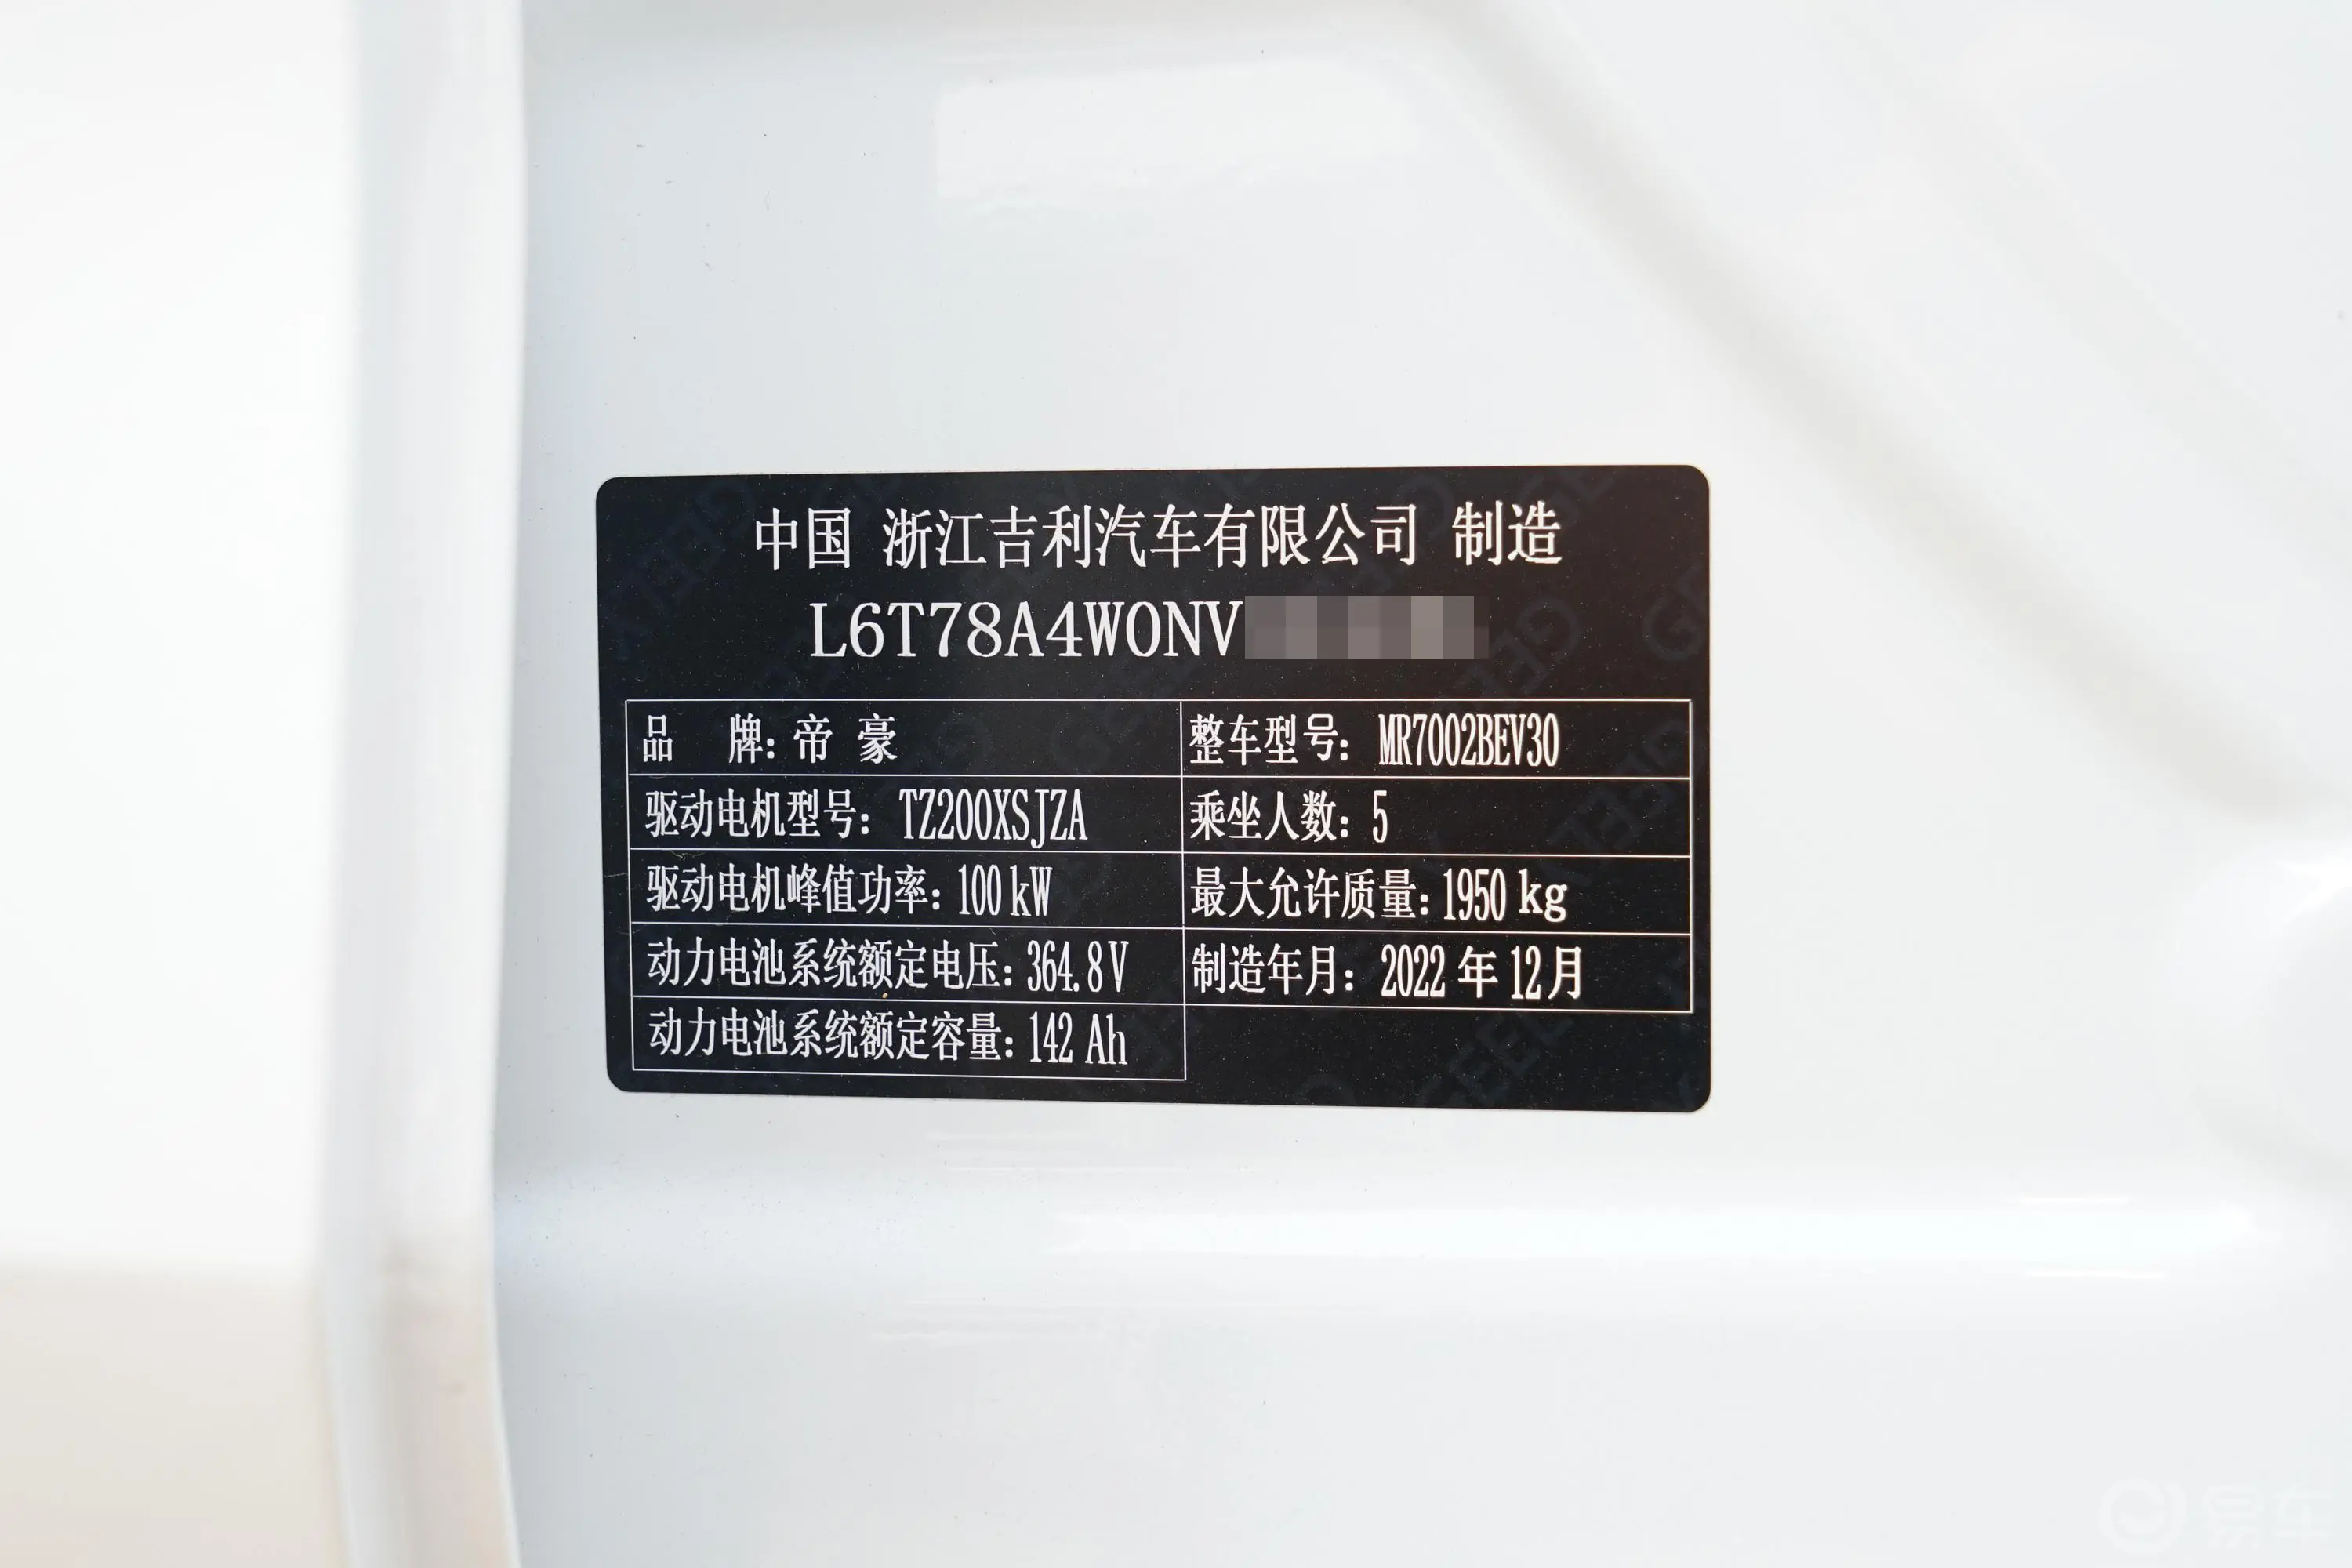 帝豪EVPro 430km 网约版车辆信息铭牌